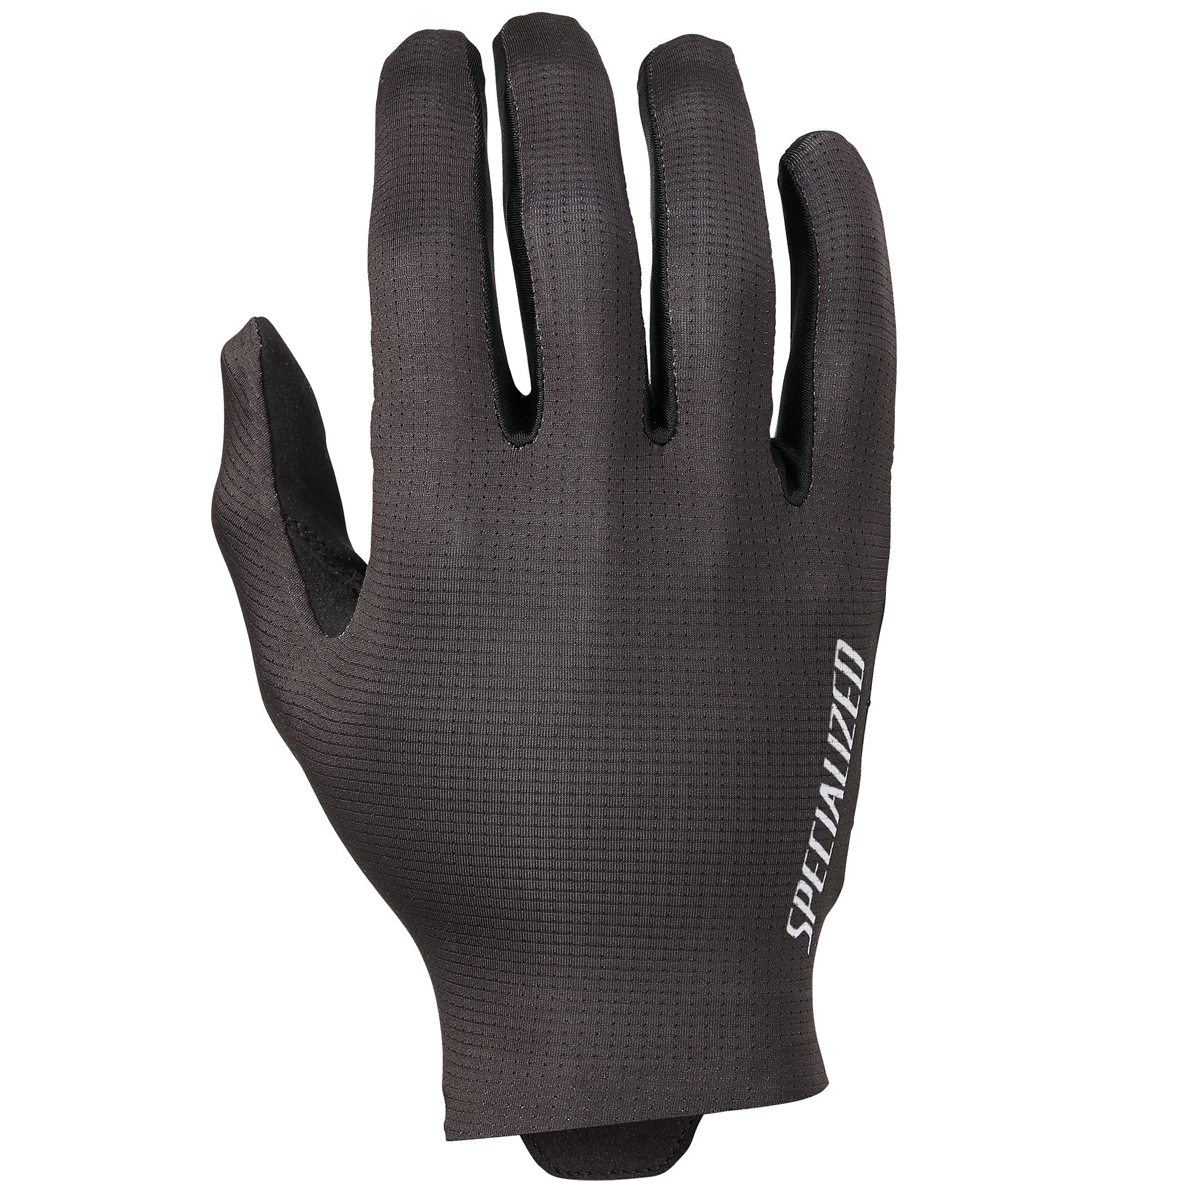 Produktbild von Specialized SL Pro Vollfinger-Handschuhe - schwarz